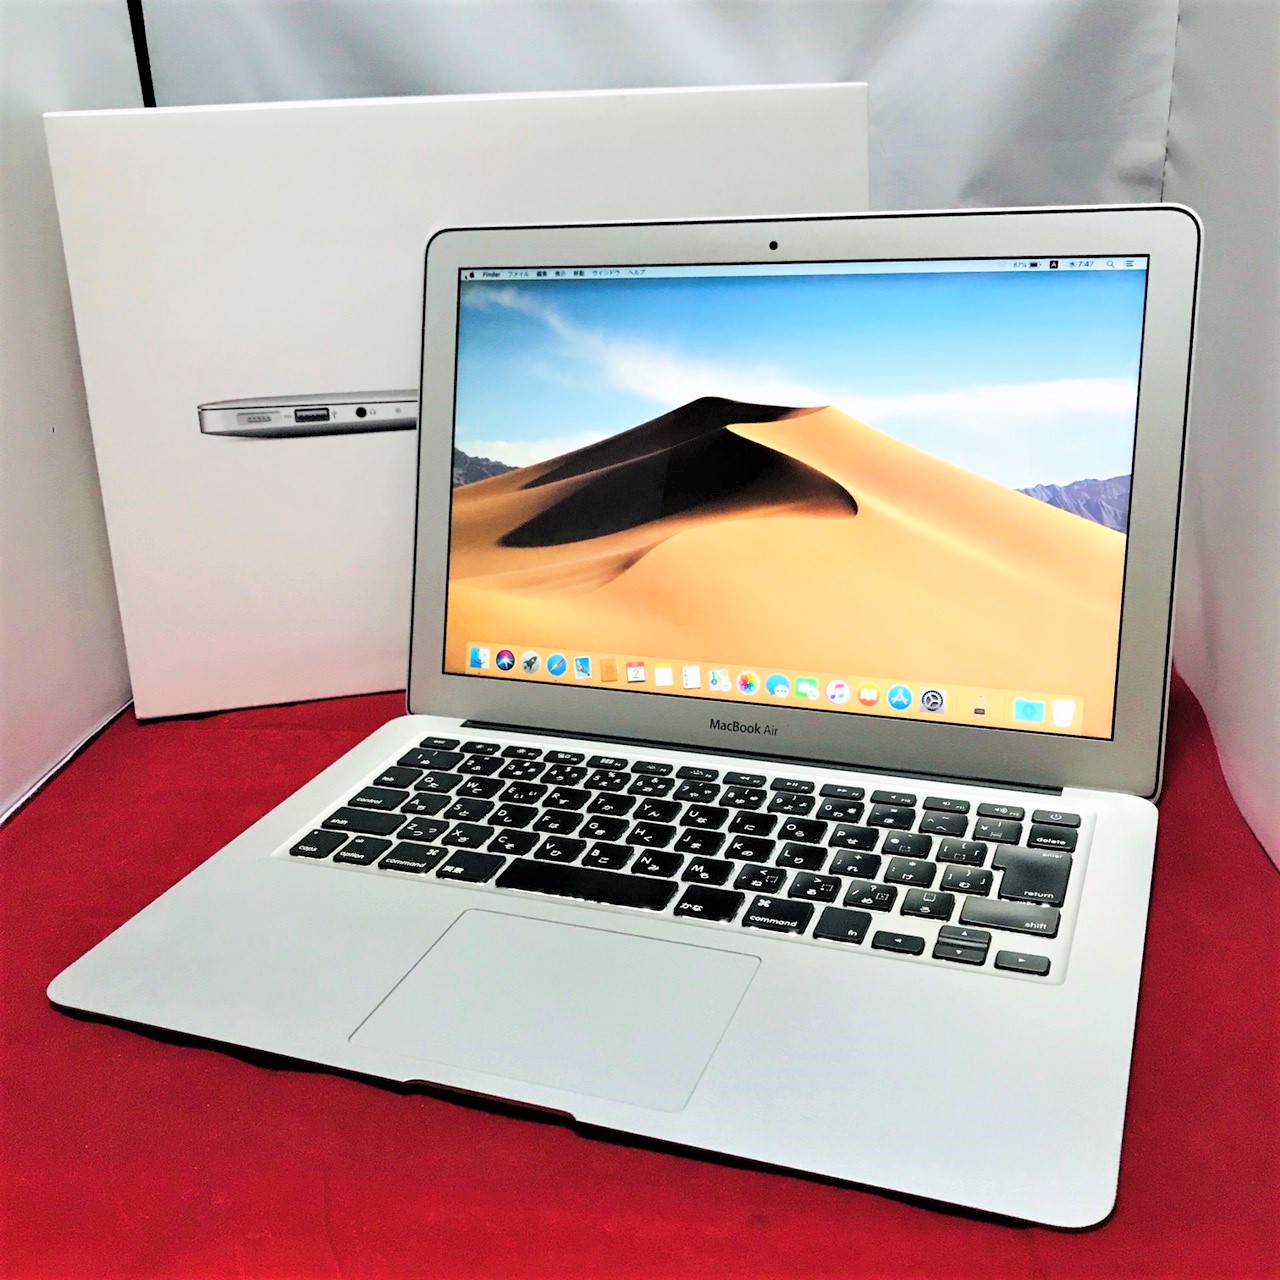 14777円 お手軽価格で贈りやすい APPLE MacBook Air MD231J A 13.3inch